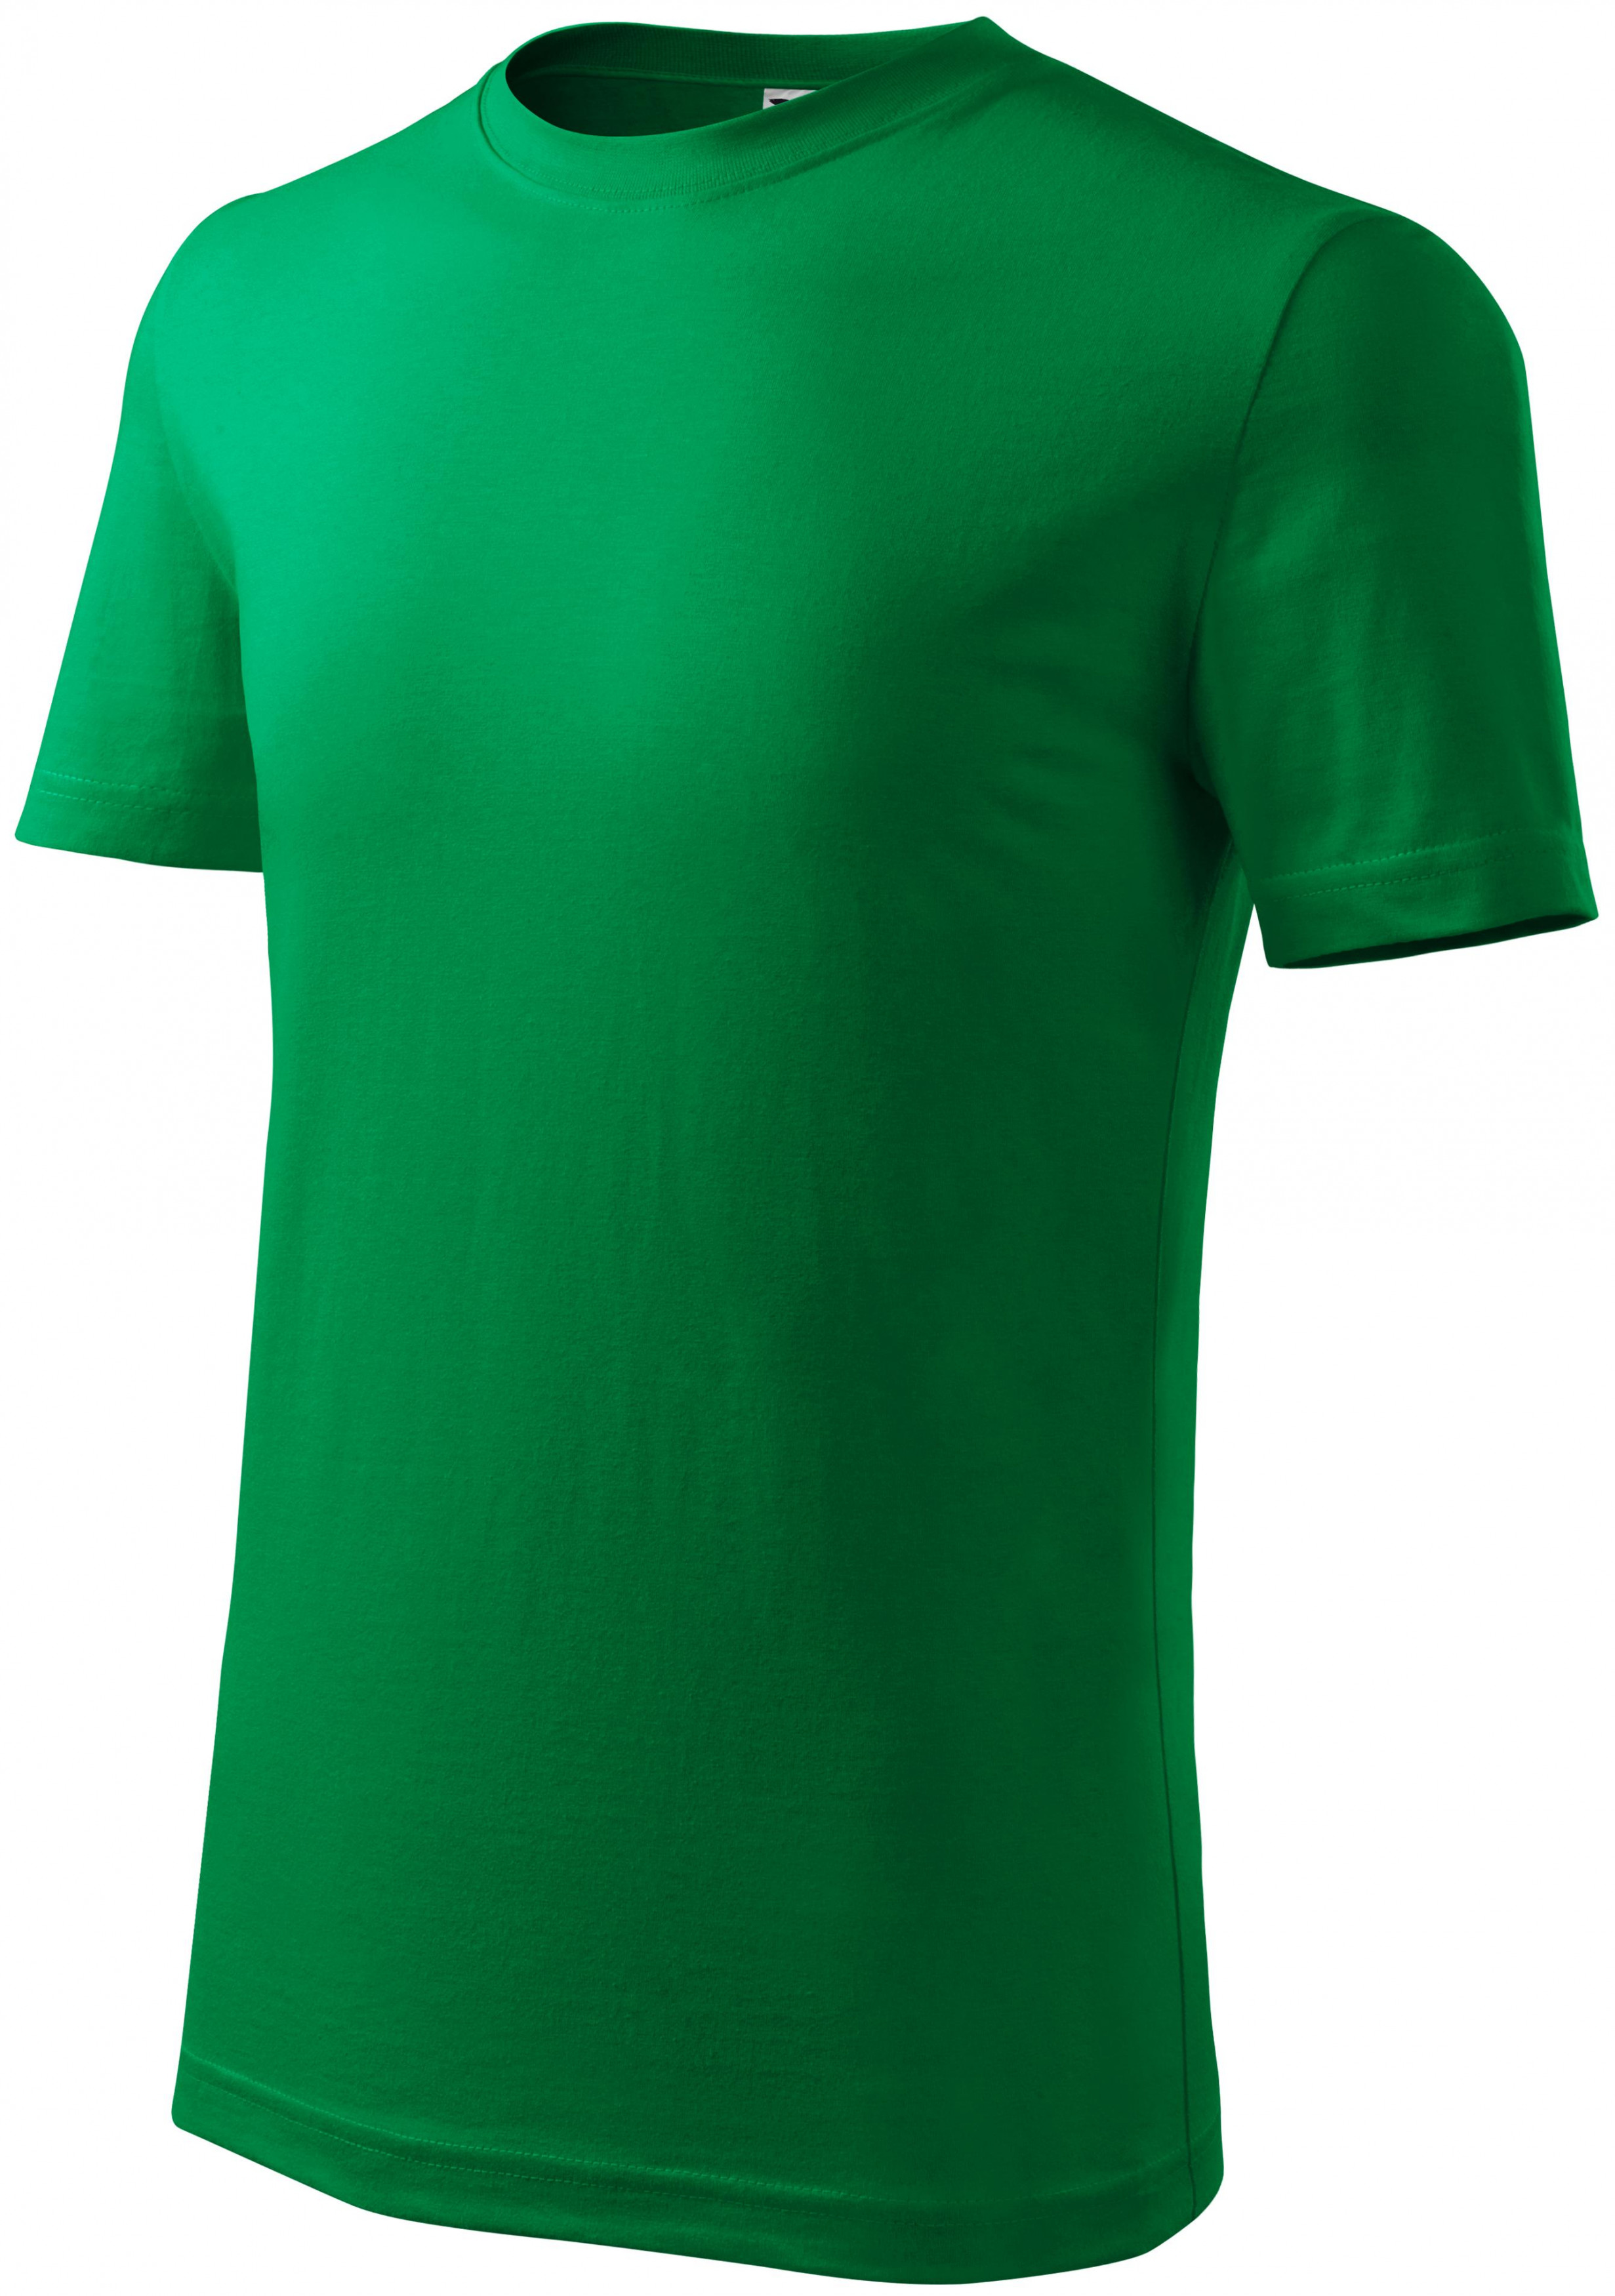 Detské tričko ľahšie, trávová zelená, 134cm / 8rokov